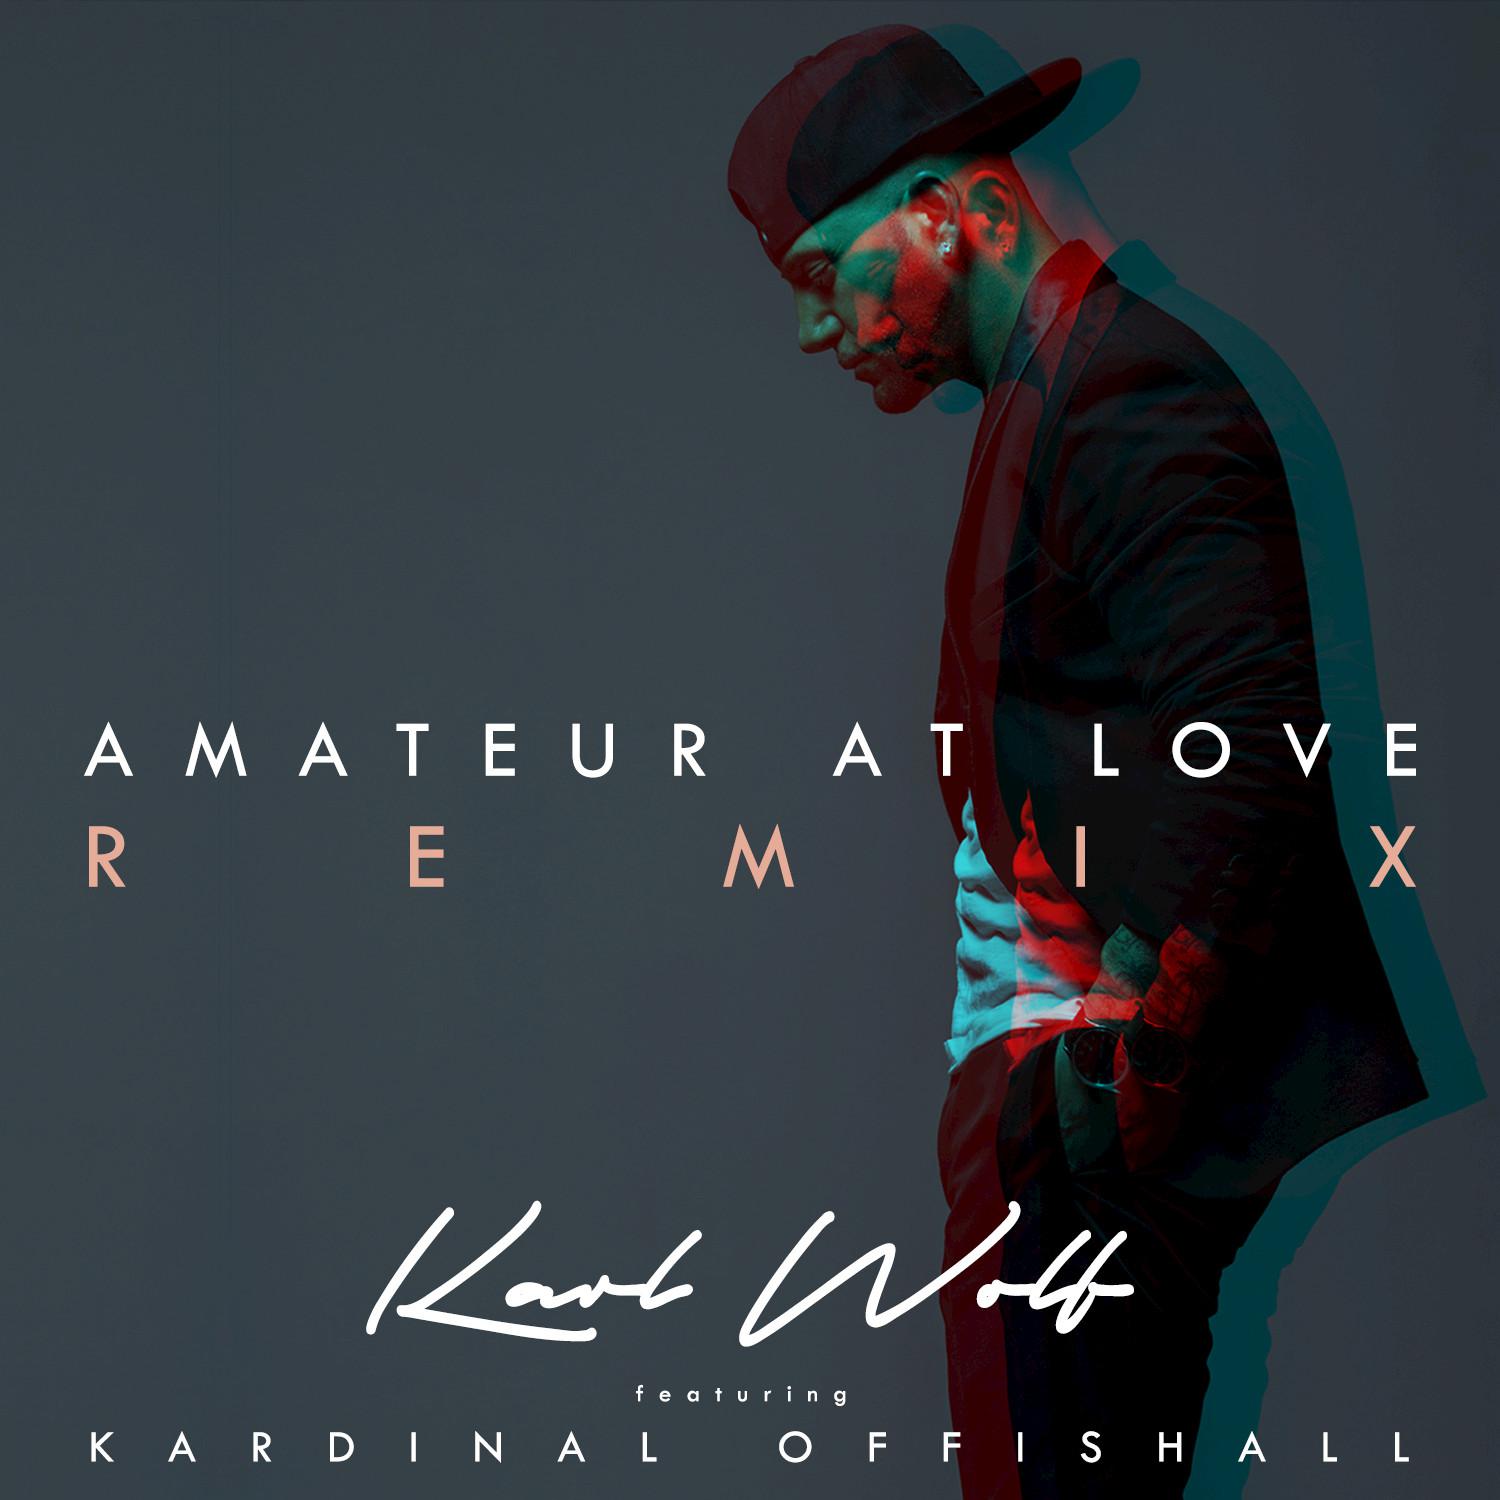 Amateur At Love (Remix)